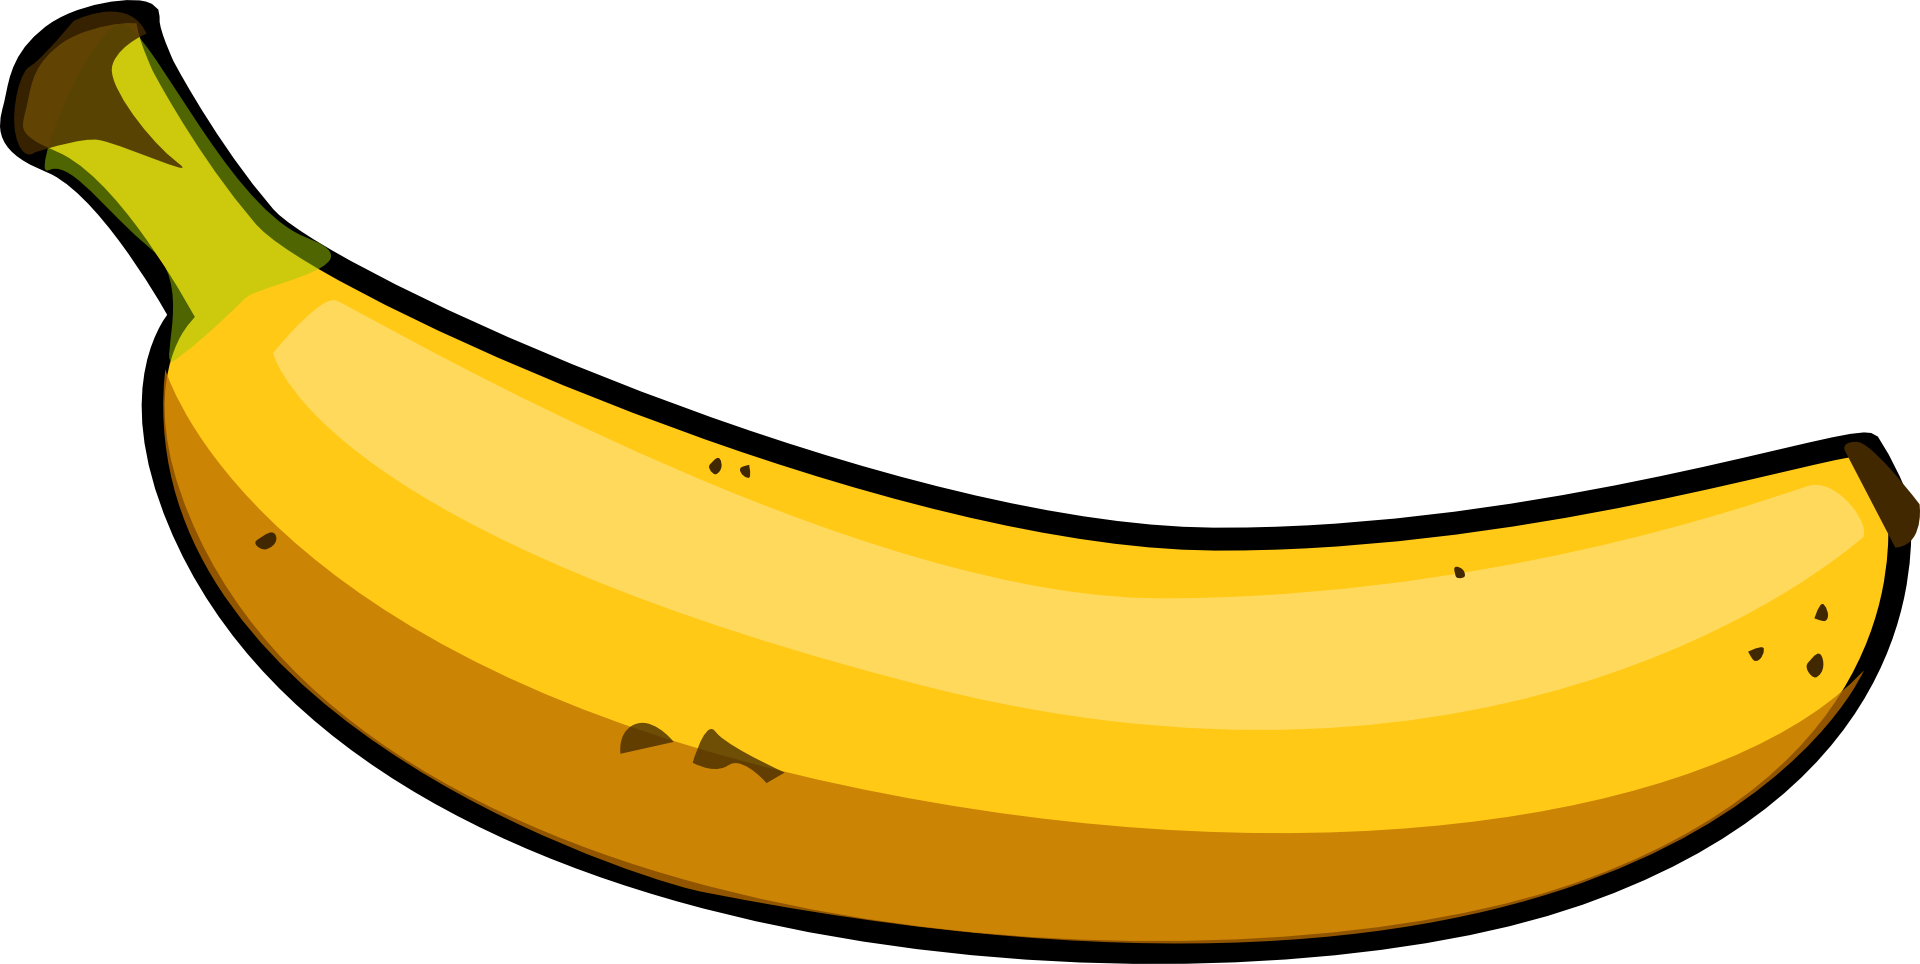 Cartoon Bananas Banana Bananas Bunch Clipart Transparent Bundle Clip Fruit Fruits Pluspng